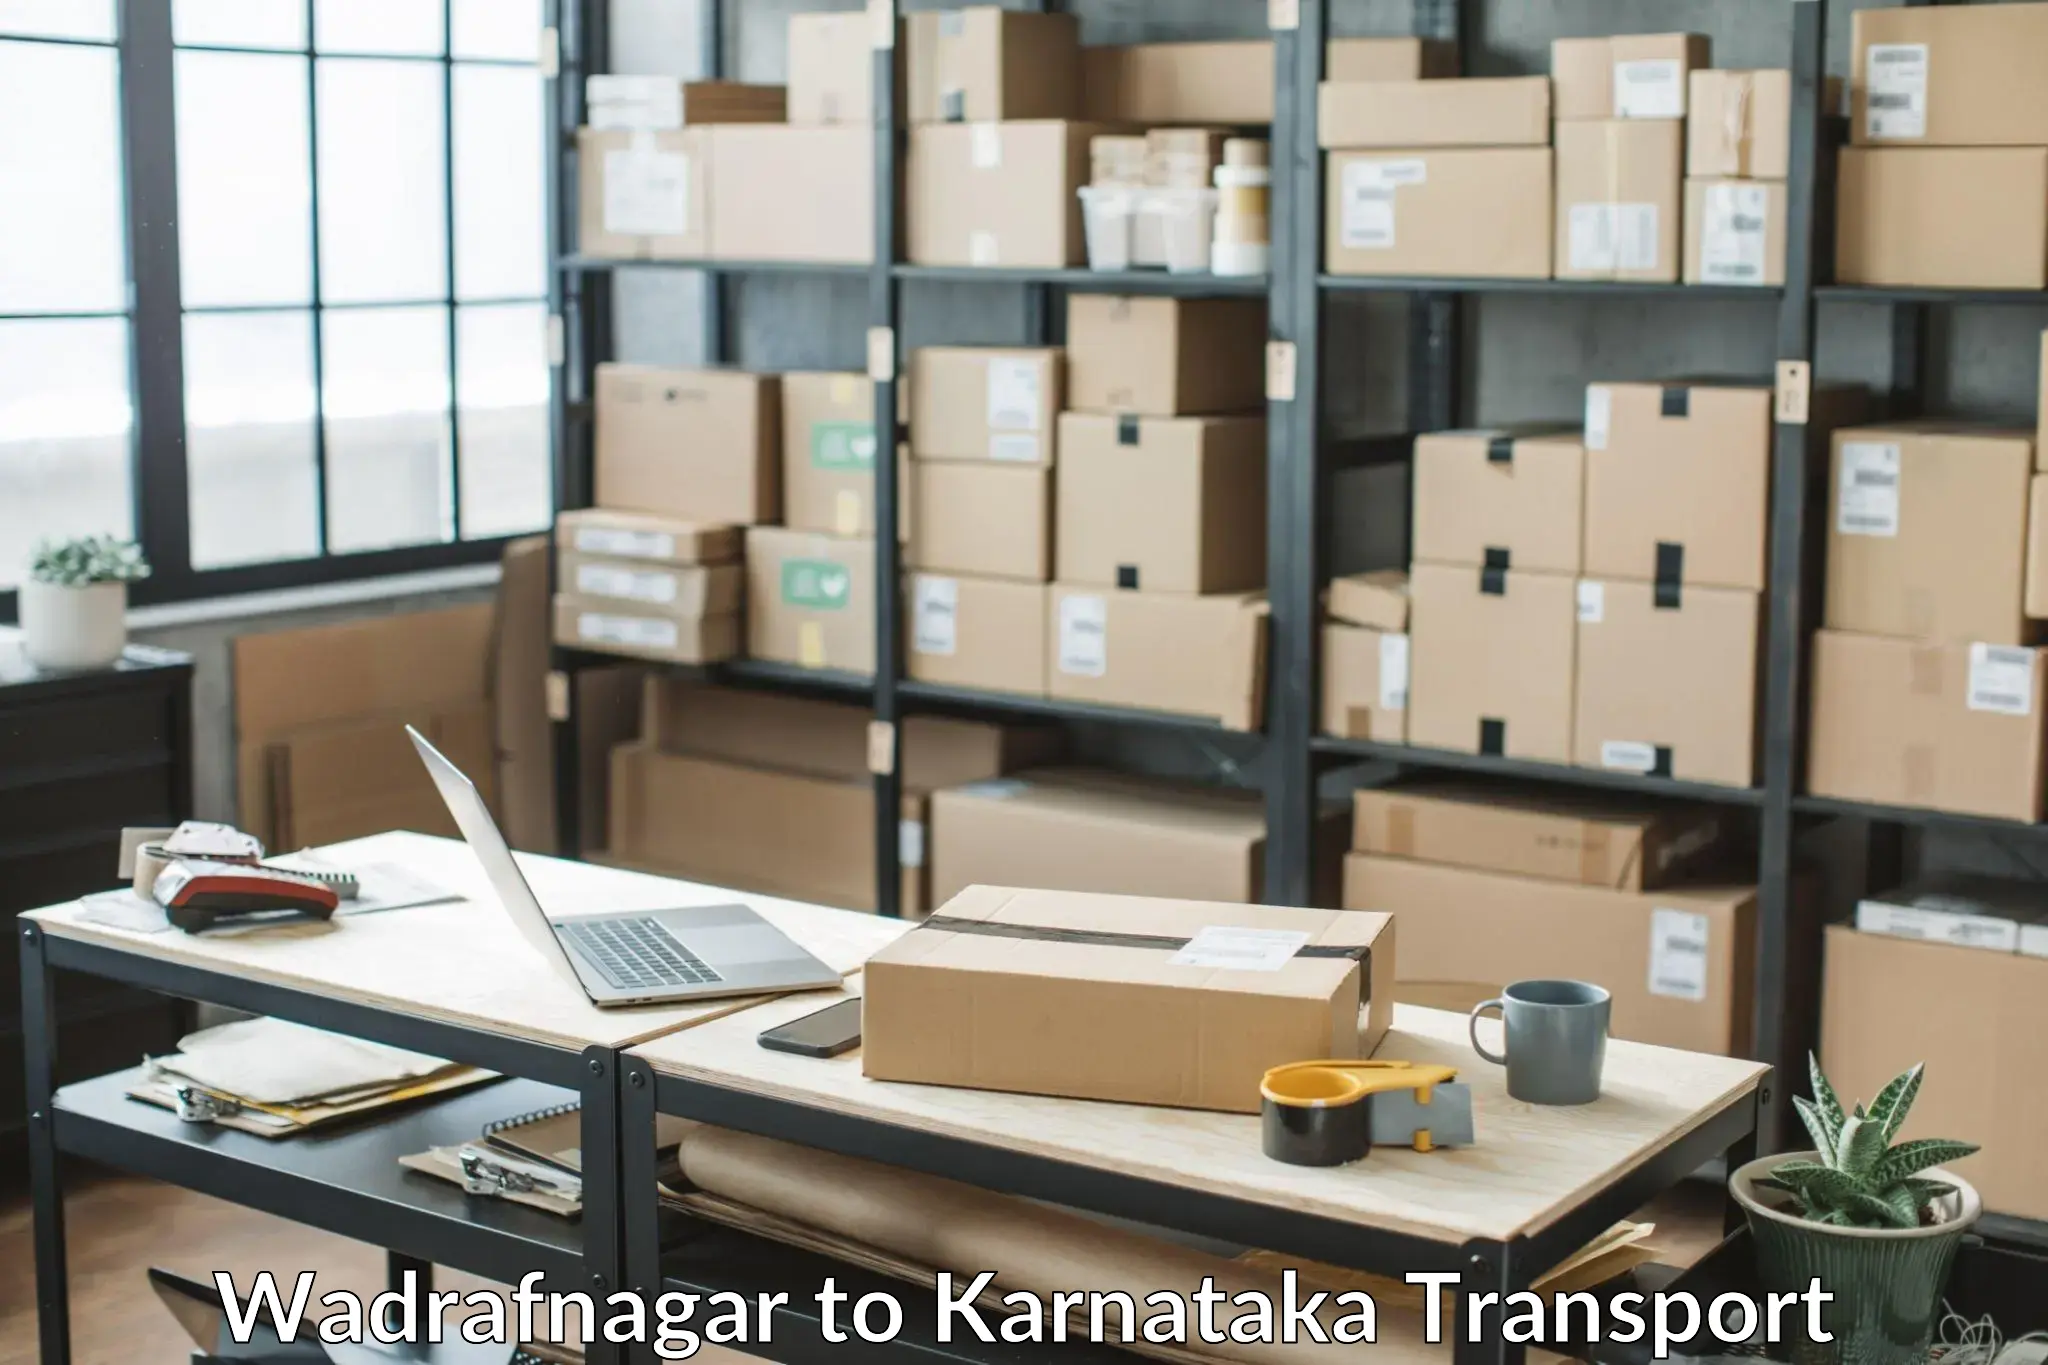 Material transport services Wadrafnagar to Srirangapatna